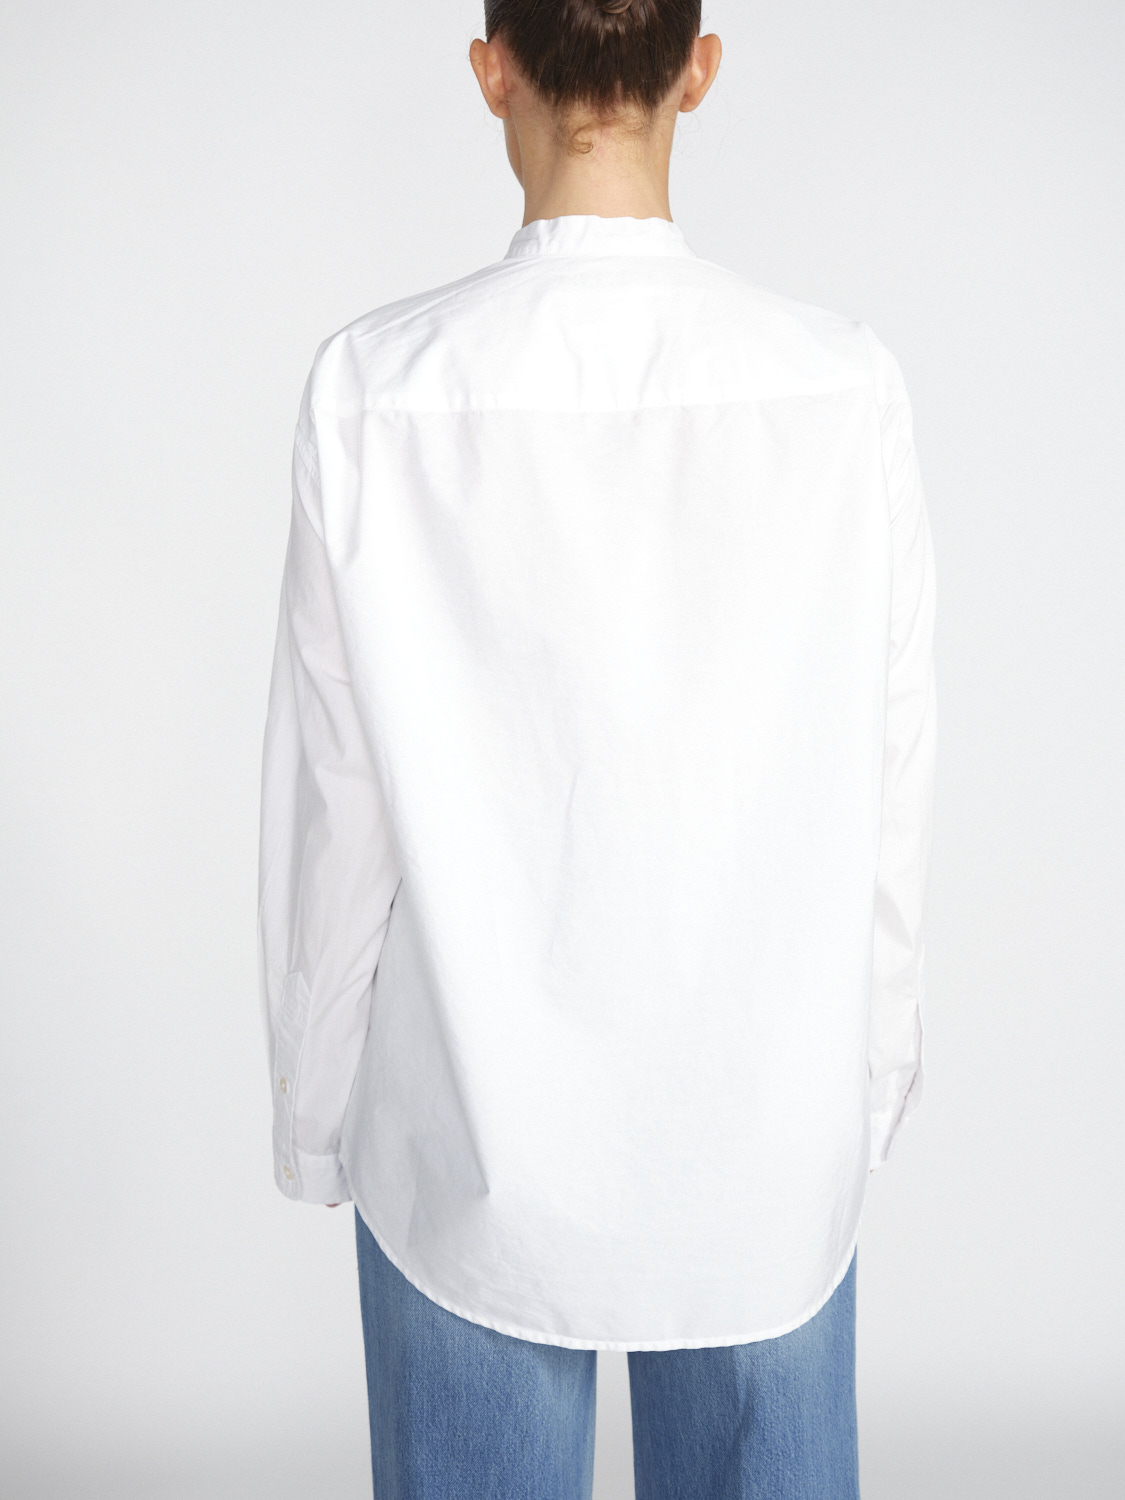 R13 Seamless - Oversized Bluse mit Montagegürtel-Details  blanco S